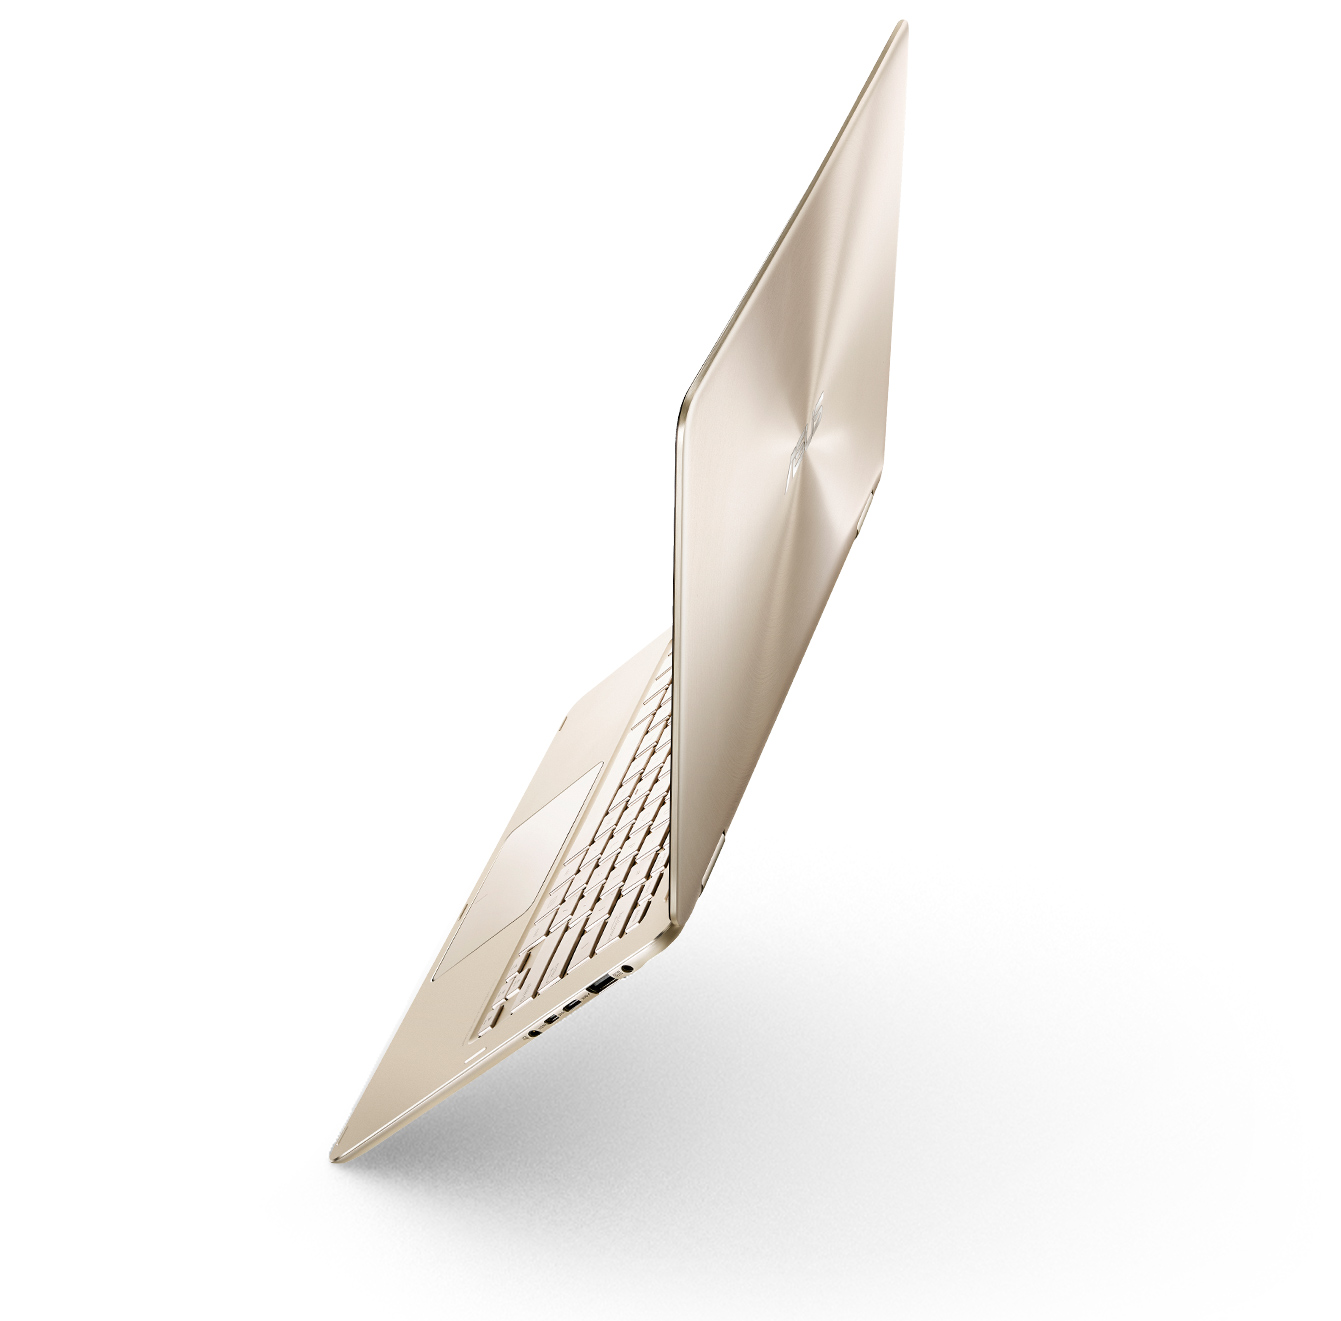 ASUS Zenbook Flip UX360CA ha un design completamente fanless